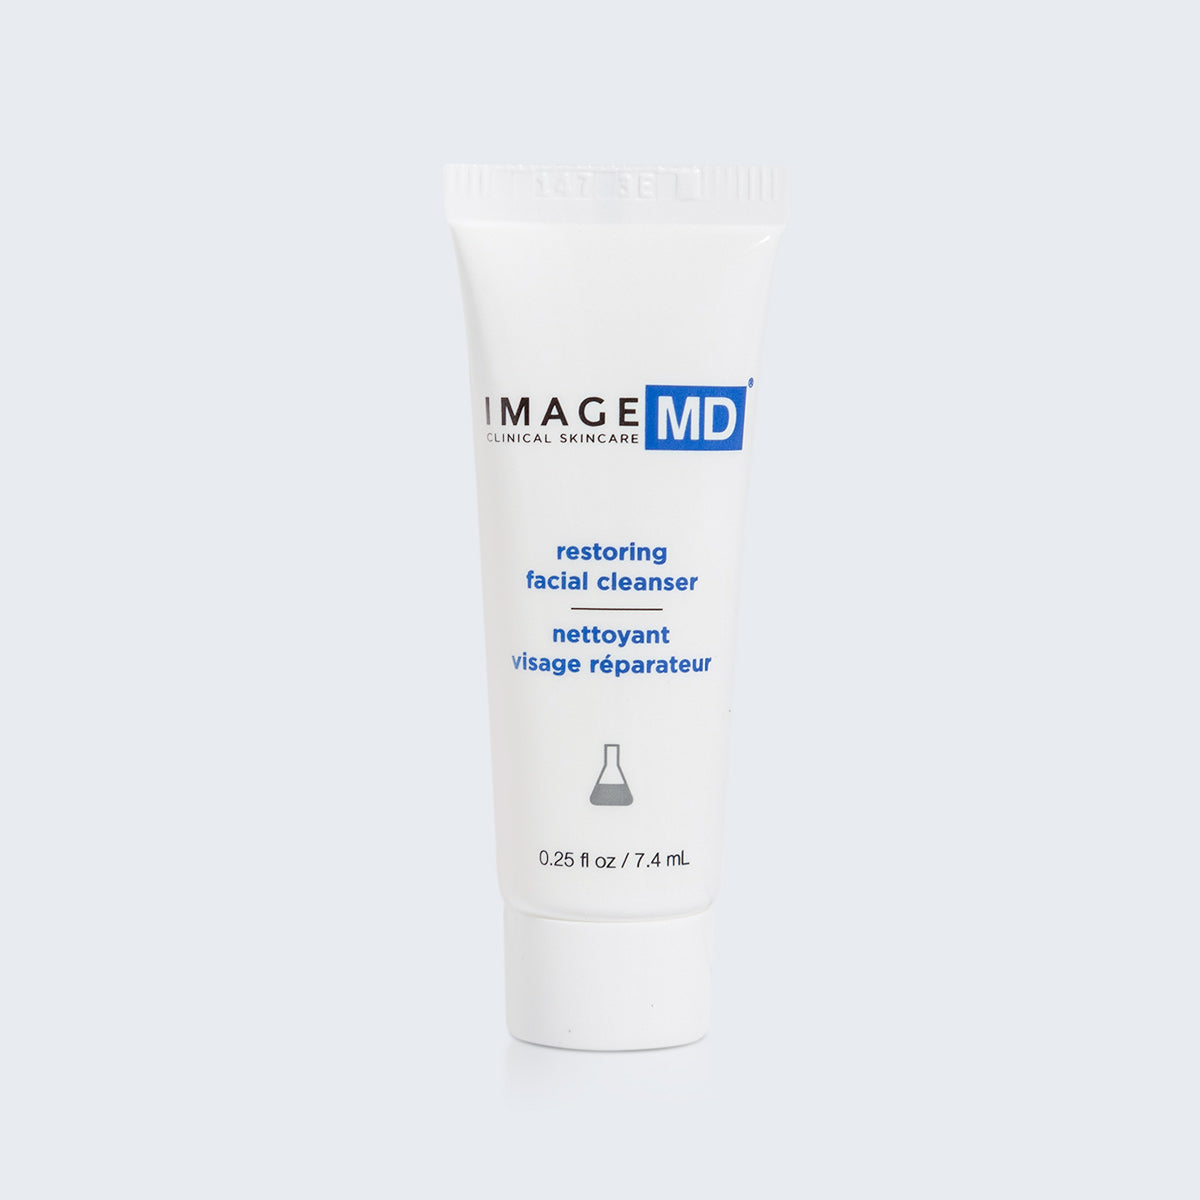 IMAGE MD Restoring Facial Cleanser Sample